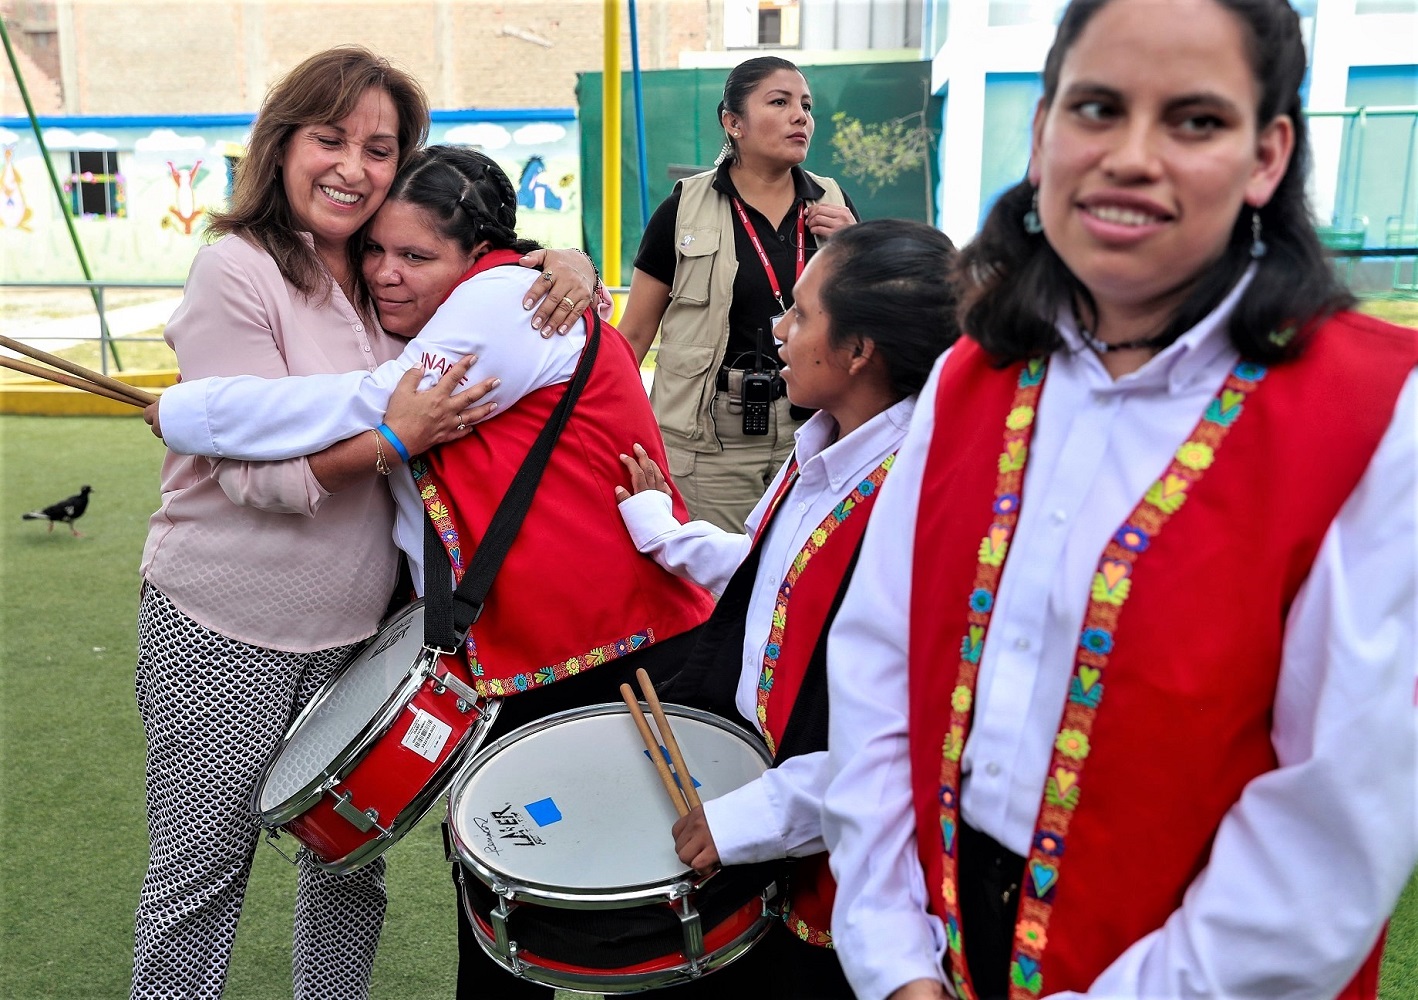 En el gobierno estamos comprometidos con los derechos y atención de los peruanos con discapacidad y vulnerables.